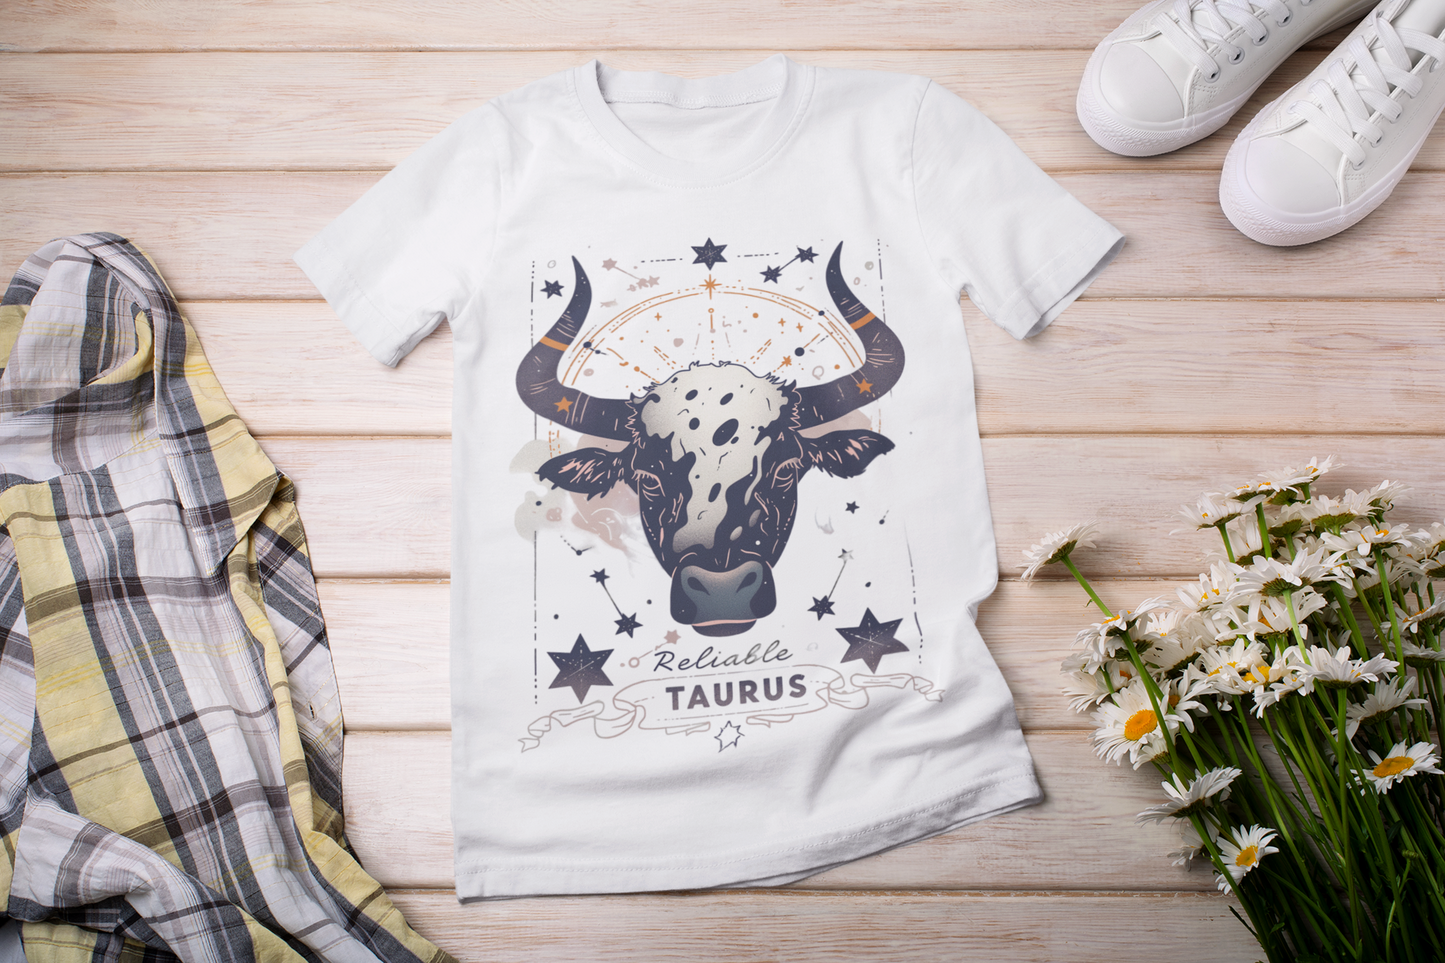 Reliable: Taurus Tarot Card T-Shirt